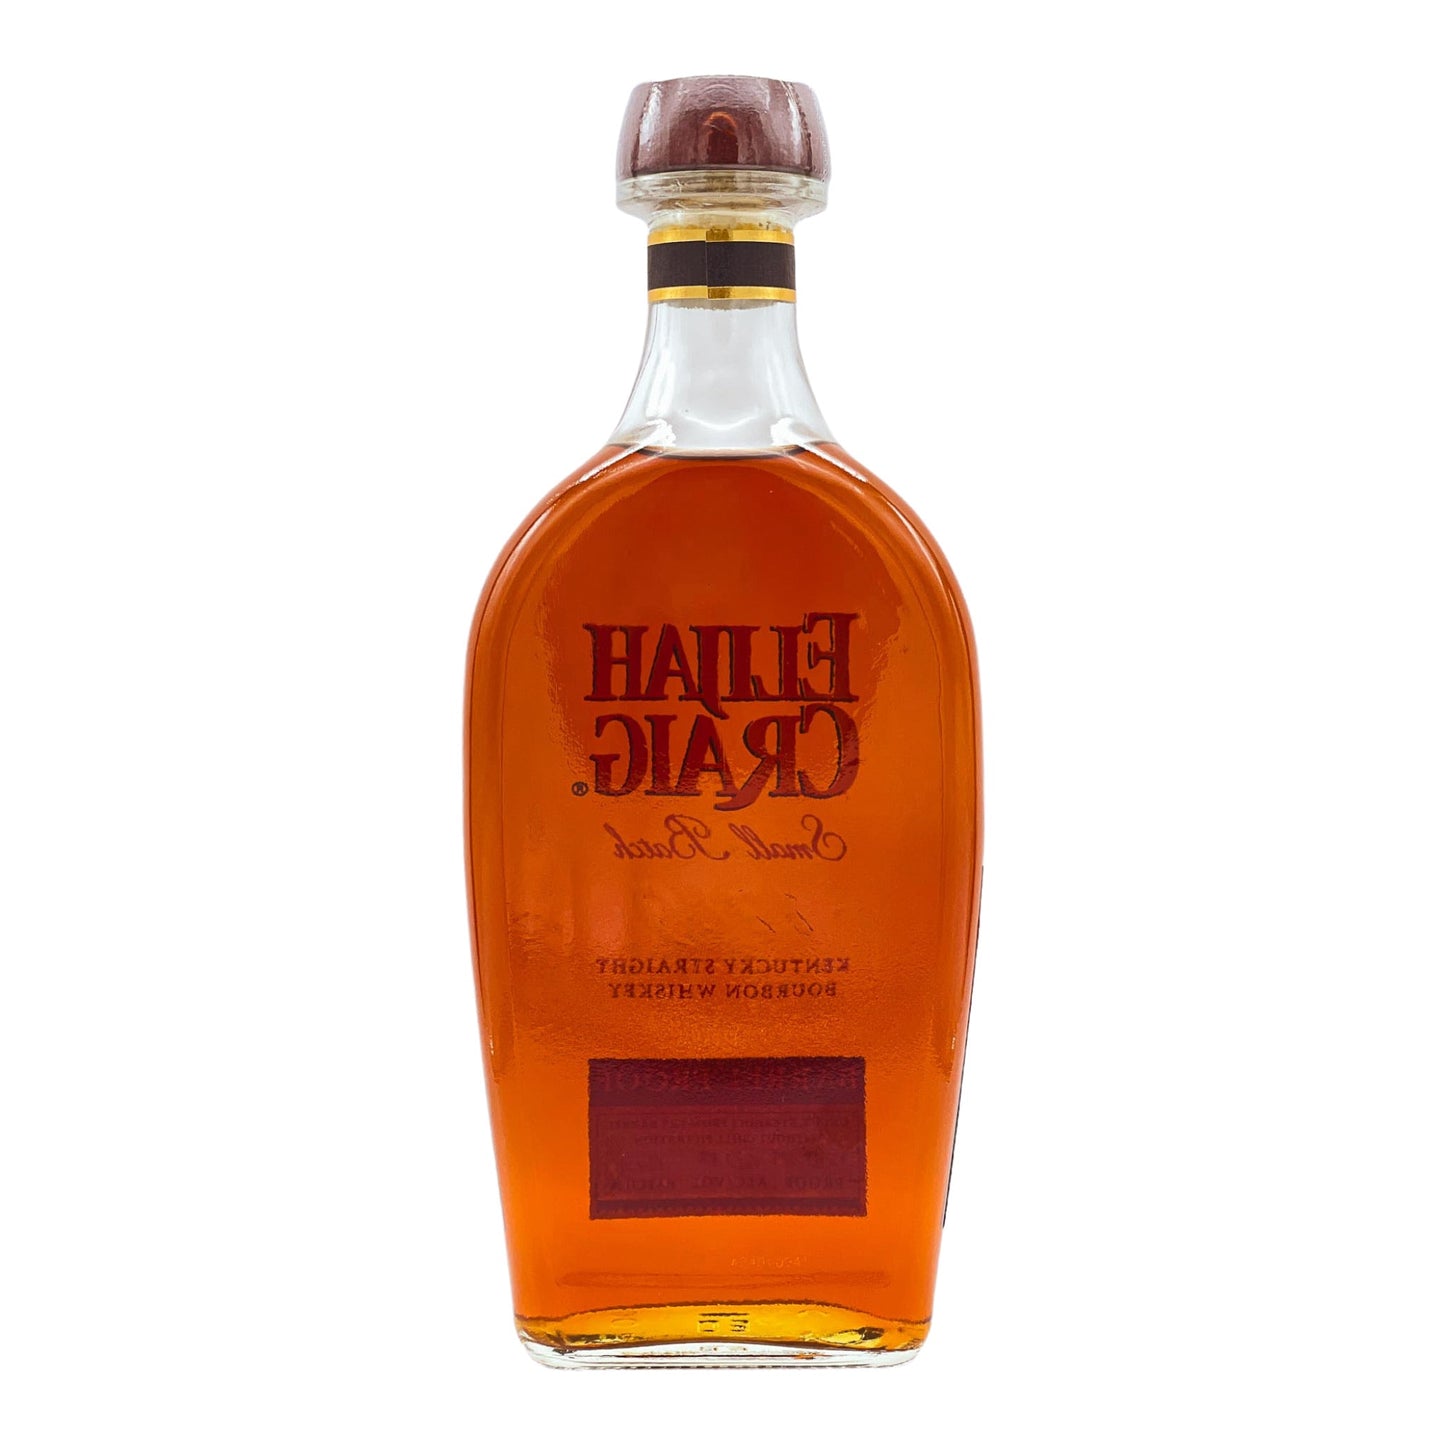 Elijah Craig | Small Batch Barrel Proof | Batch C921 | Kentucky Straight Bourbon | 0,7l | 60,1%GET A BOTTLE